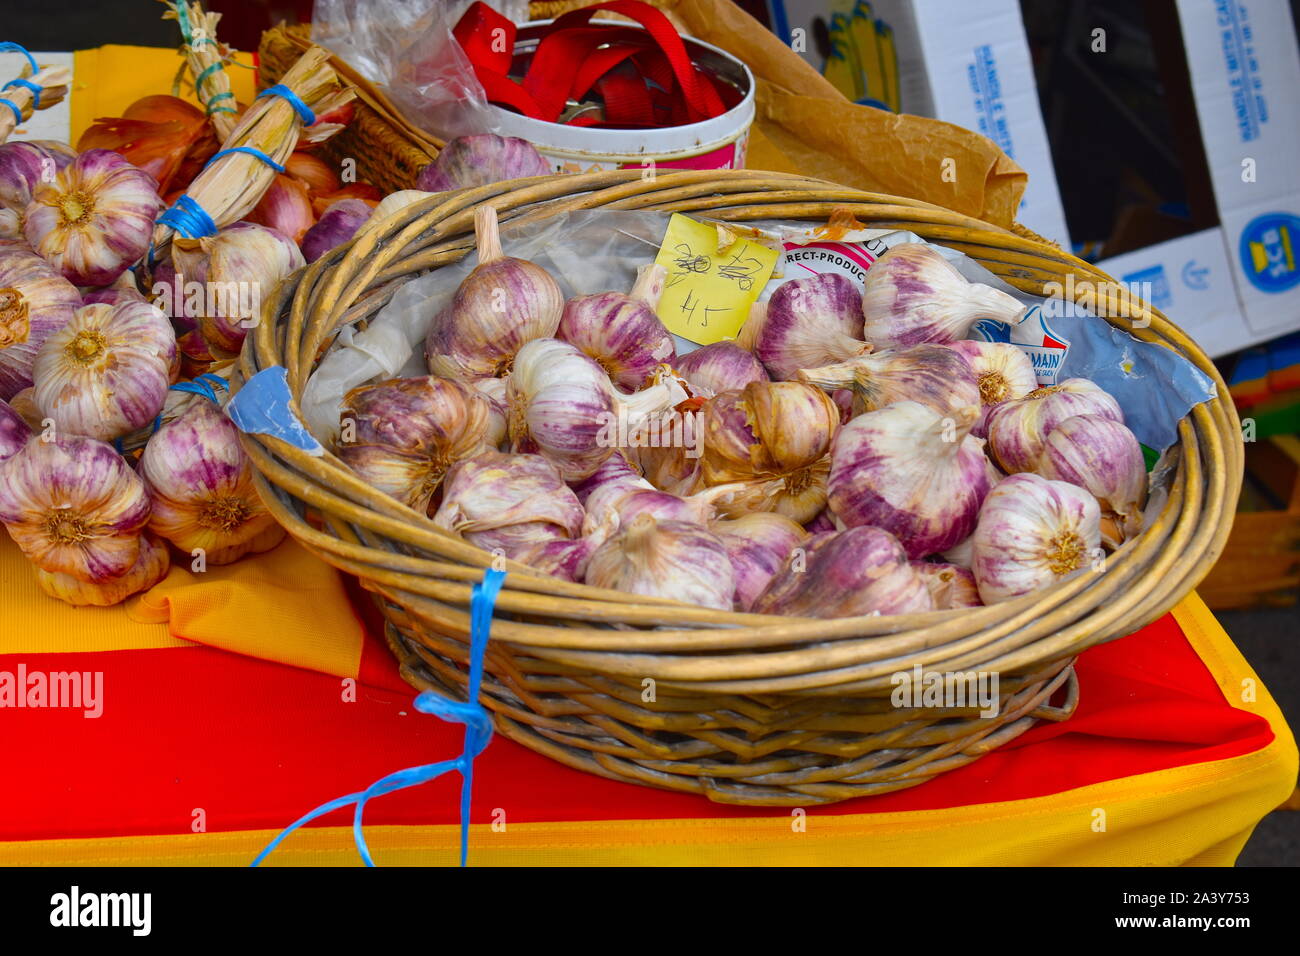 L'ail rose et blanc Catalan produire sur stand en français ville médiévale. Les produits biologiques à vendre directement de l'agriculteurs. Banque D'Images